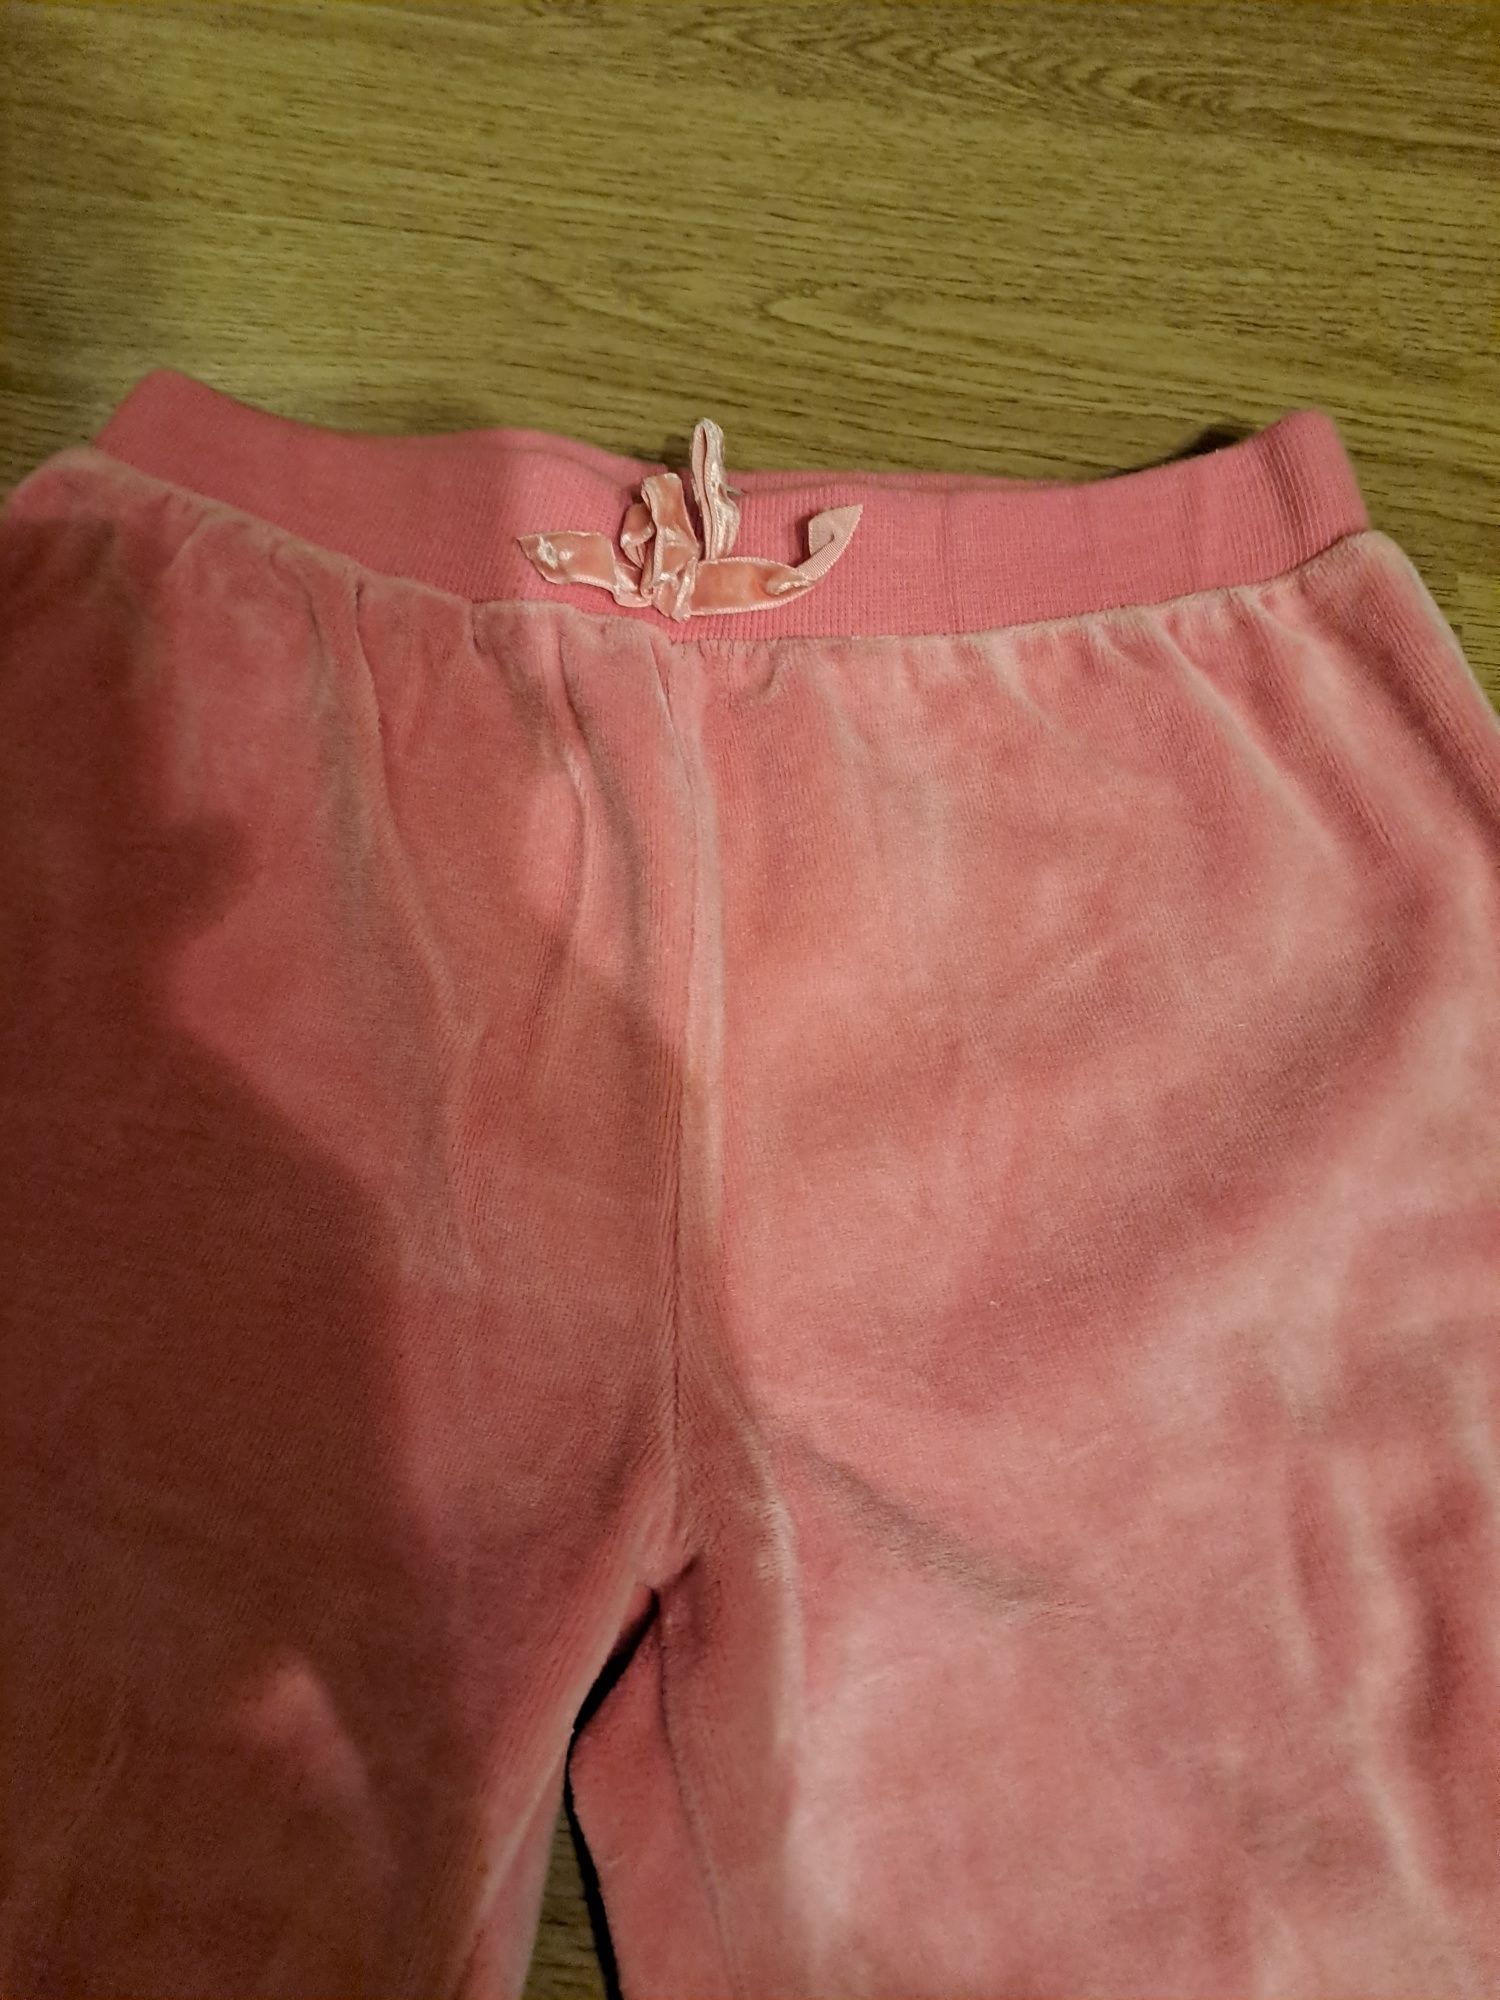 Welurowe spodnie dla dziewczynki